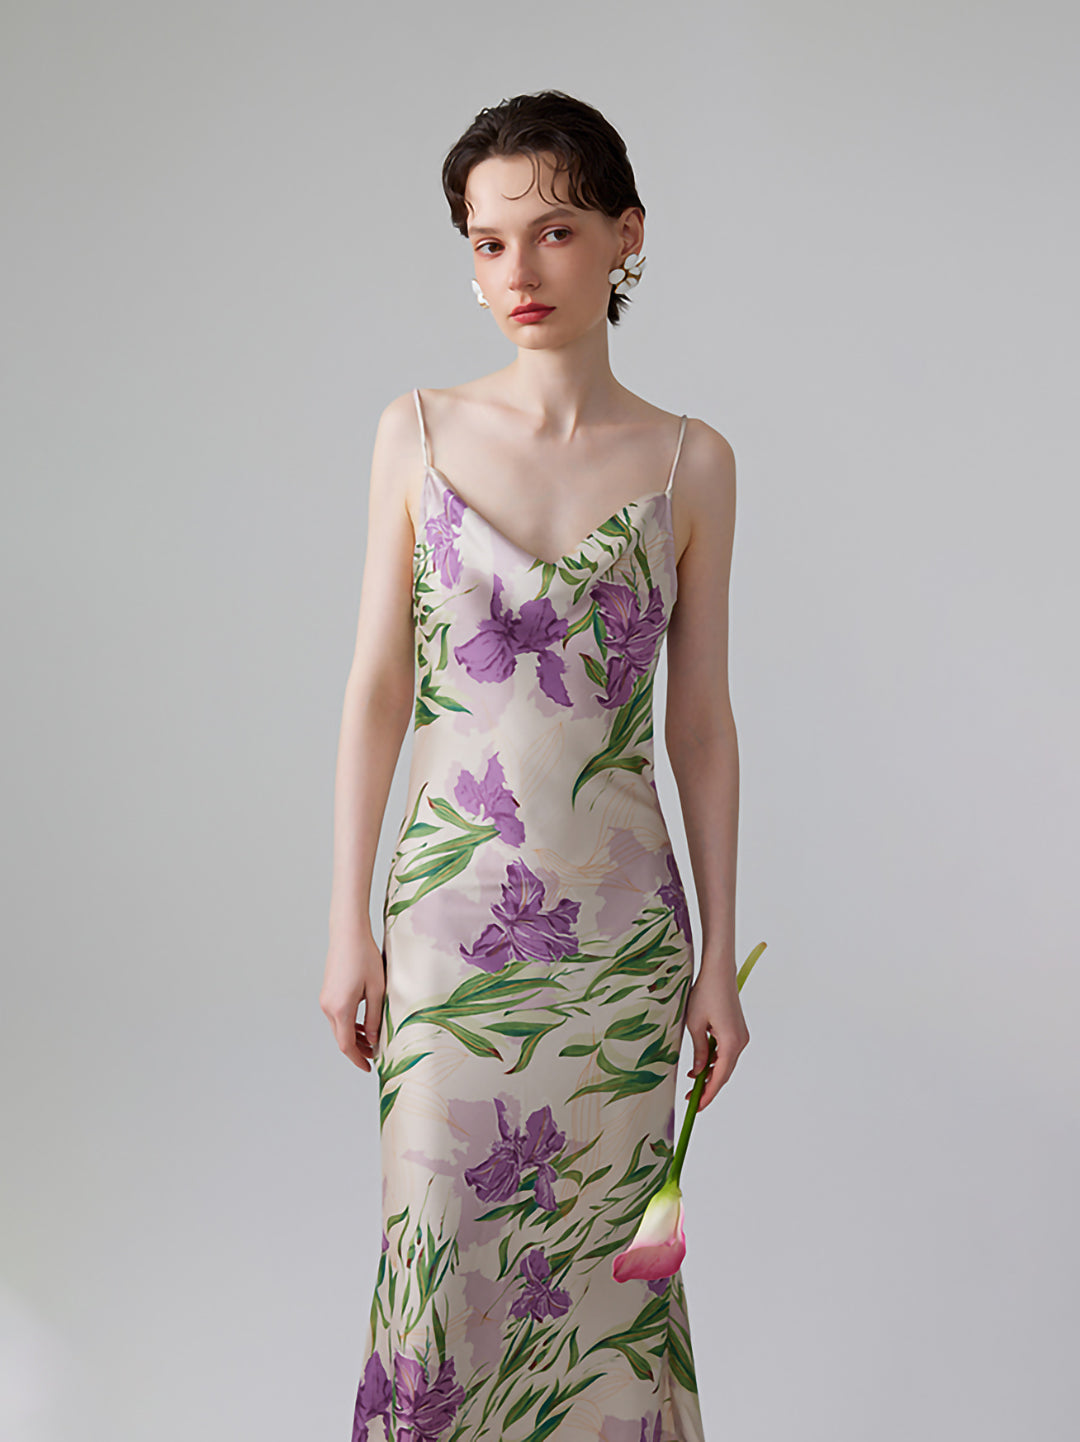 アイリスヴァイオレット 花柄シルクキャミドレス